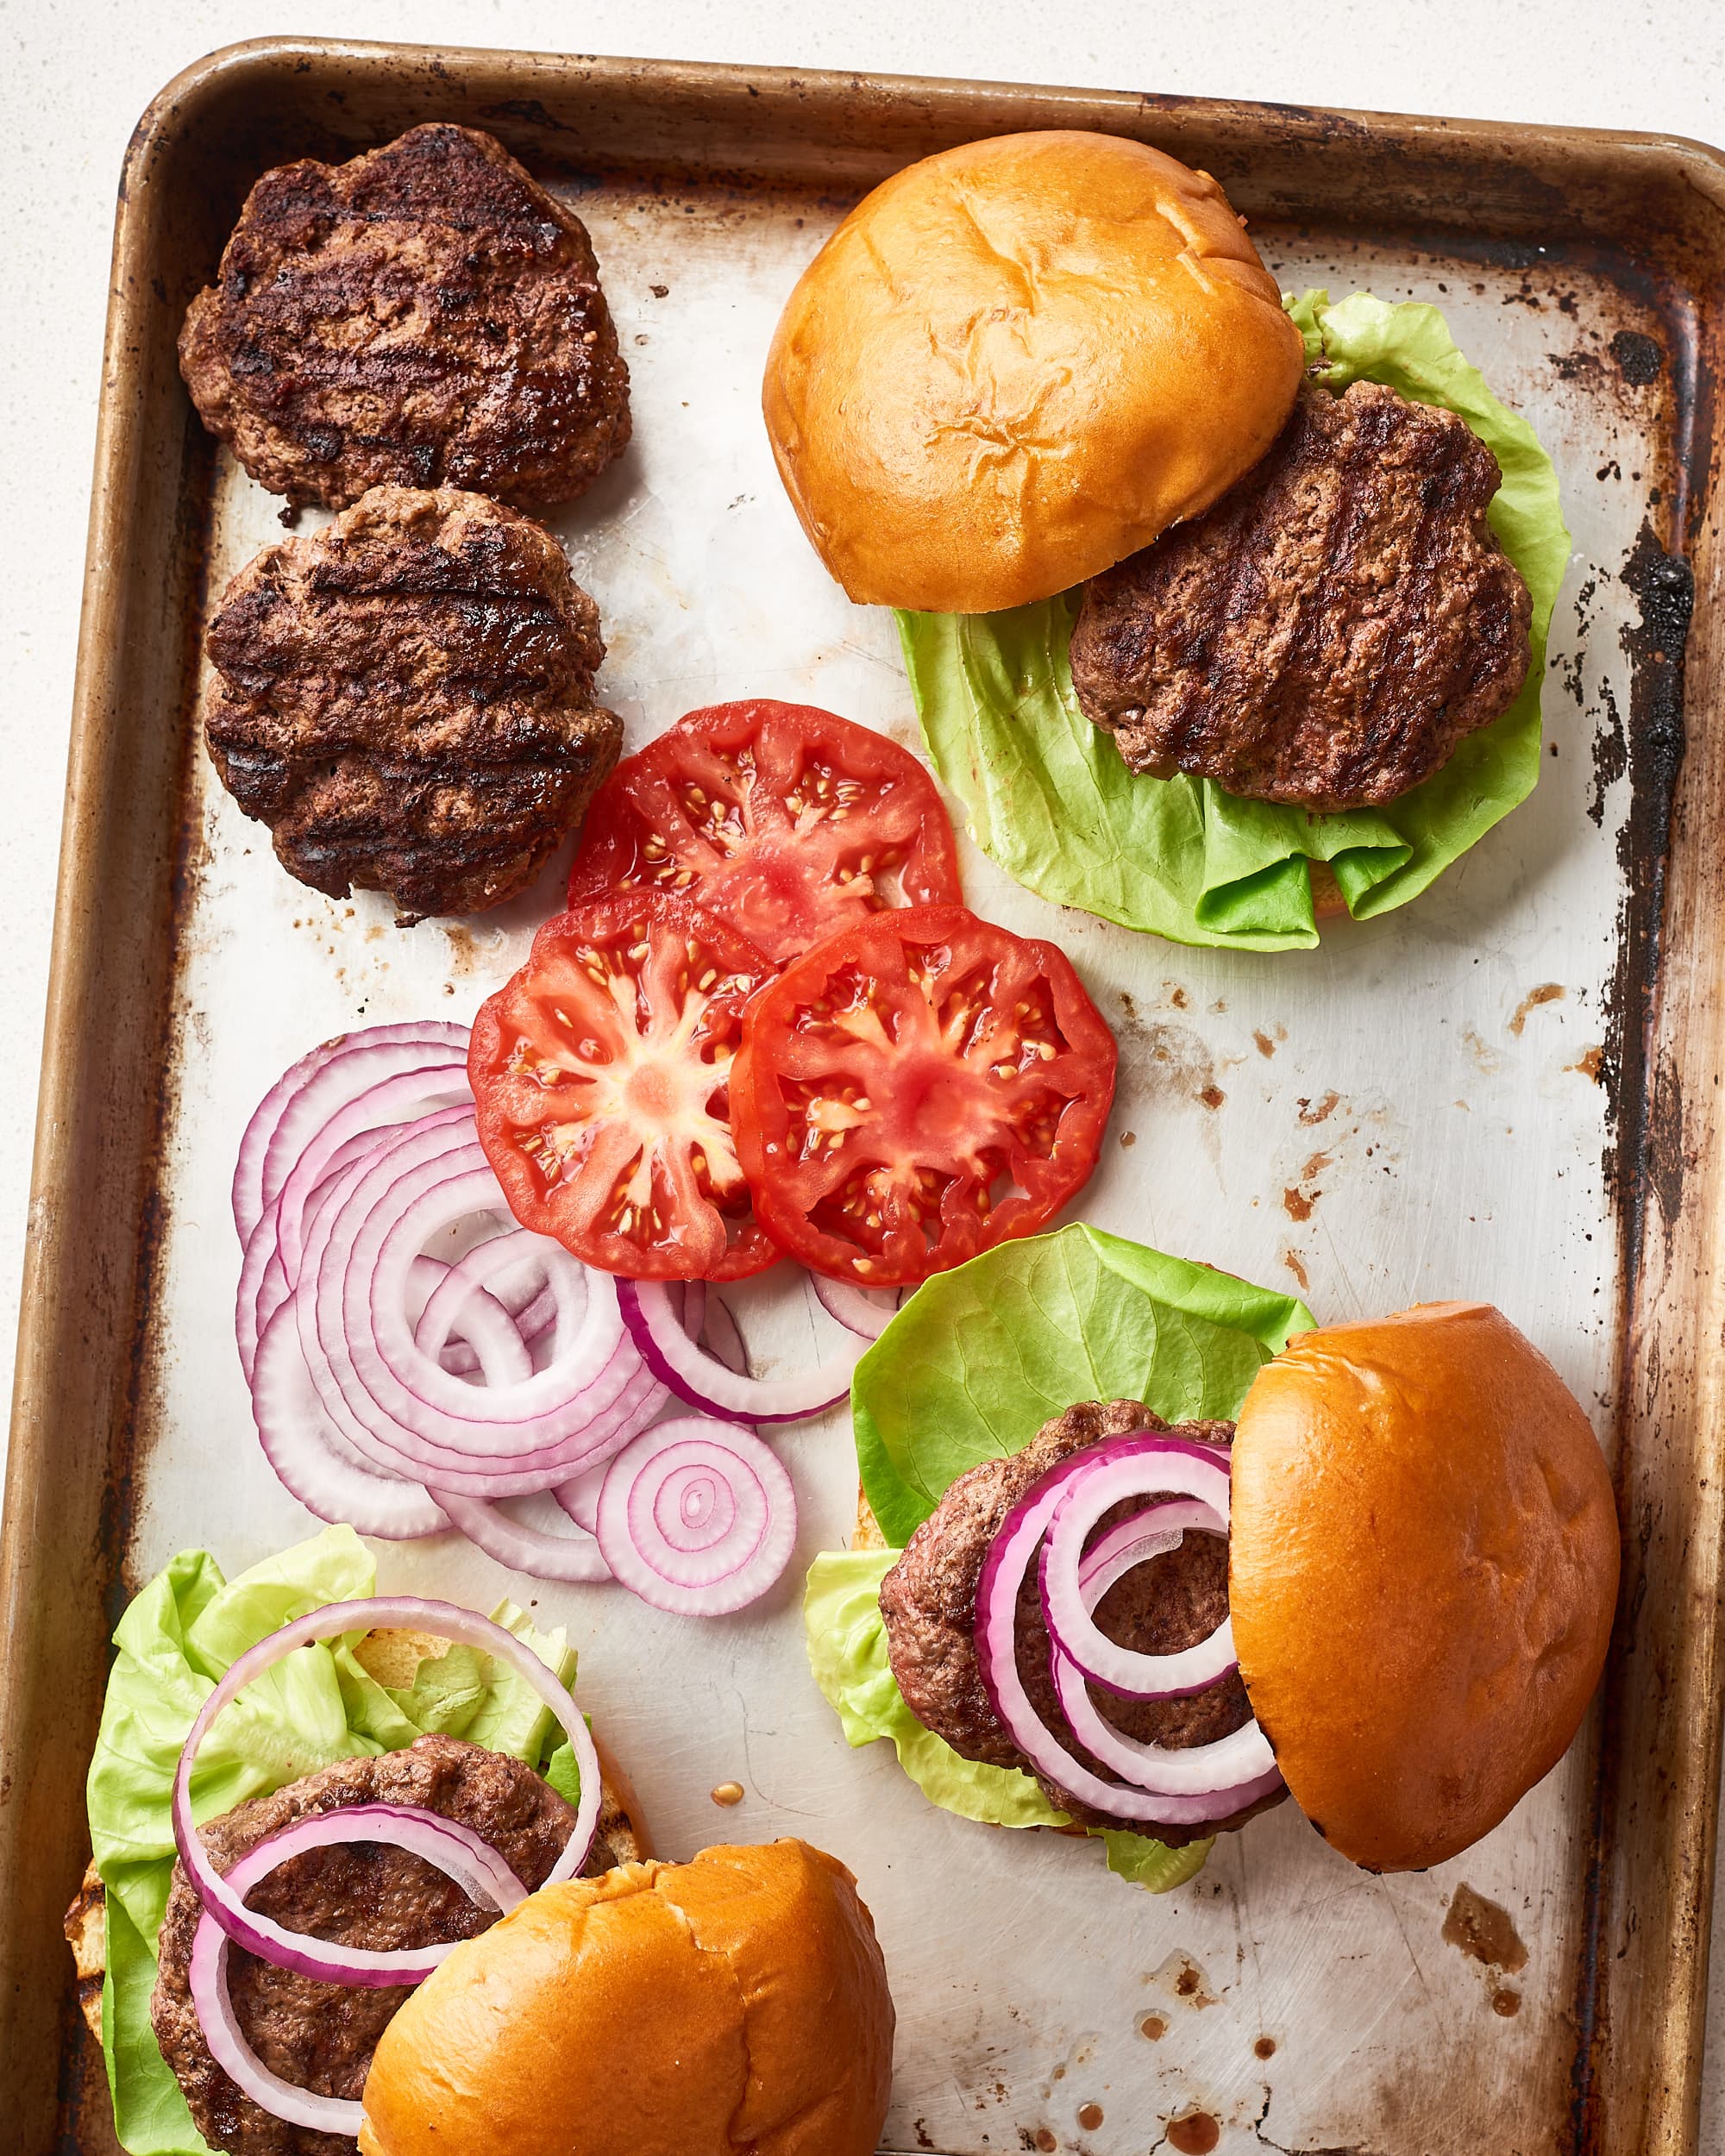 Best Burger Seasoning To Buy  Perfect Grilled Steak Seasoning